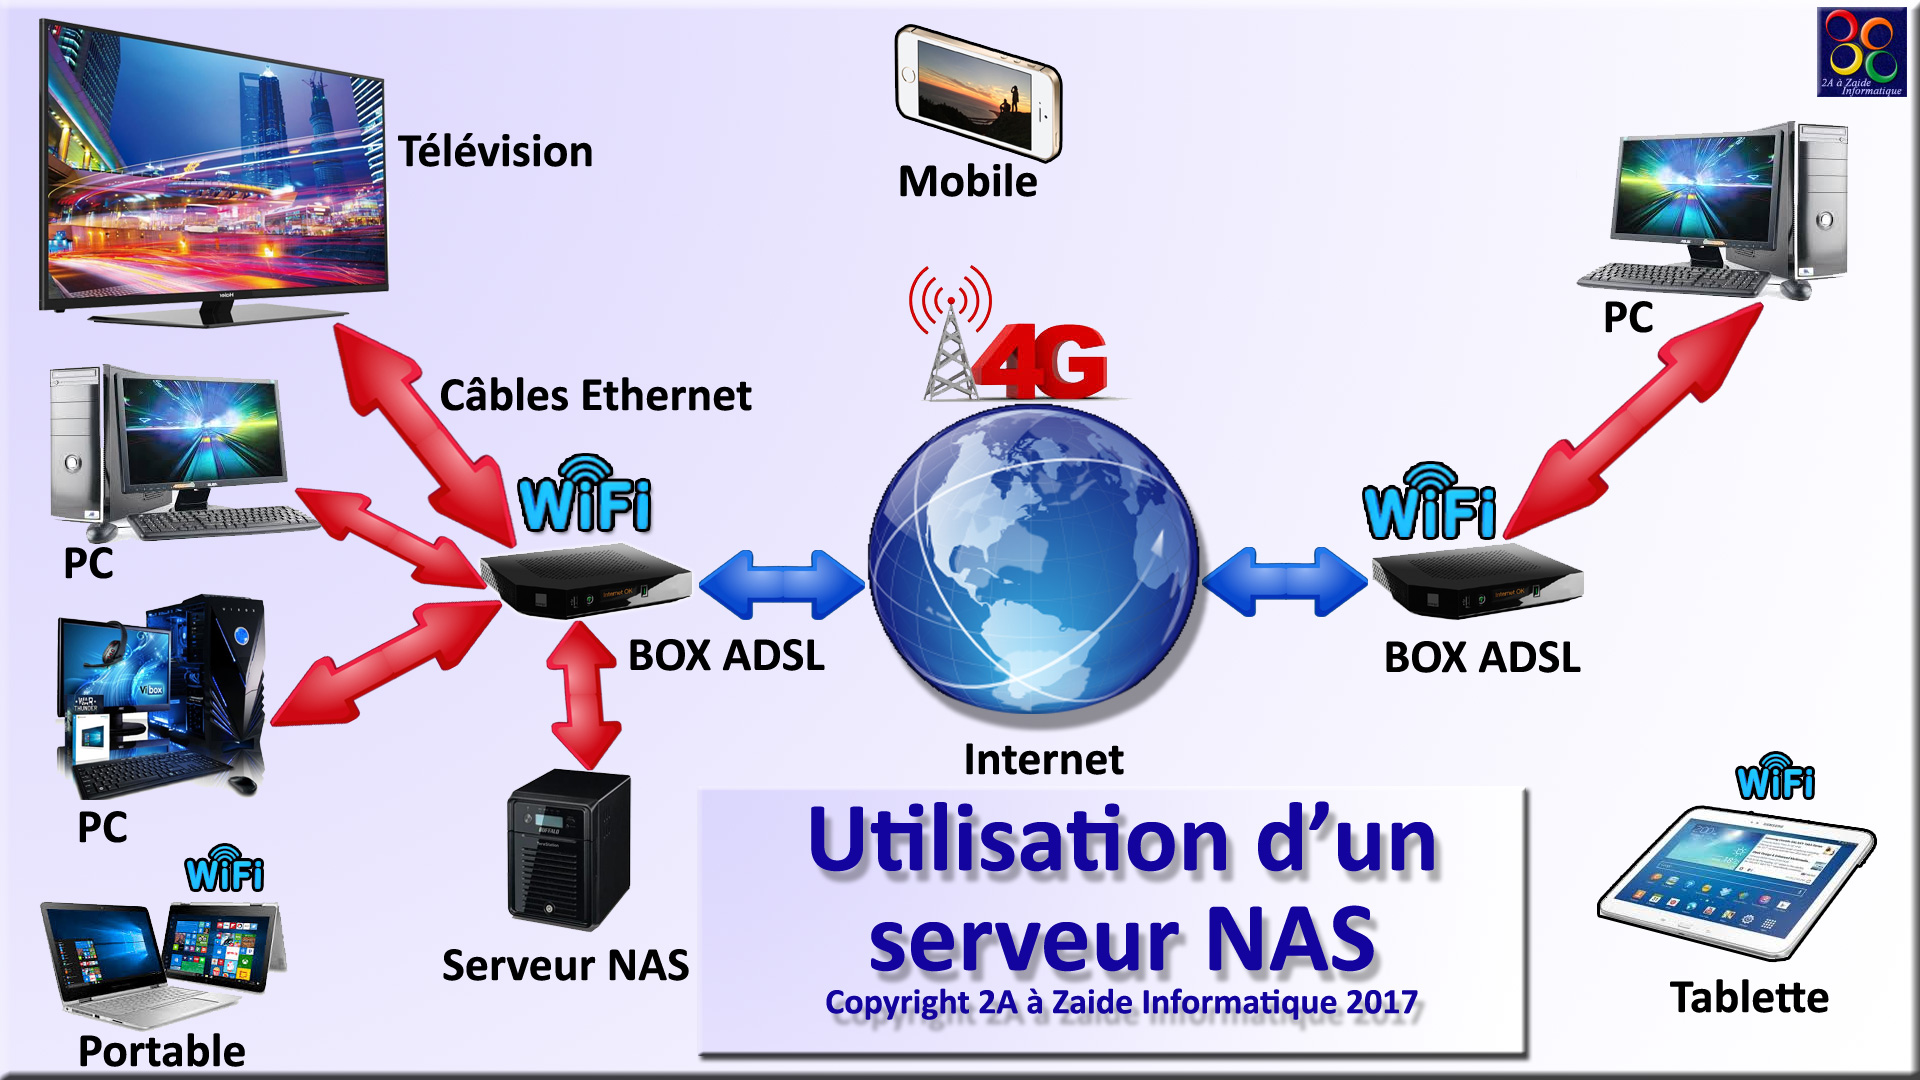 La différence entre un serveur et un NAS - ESIS Informatique